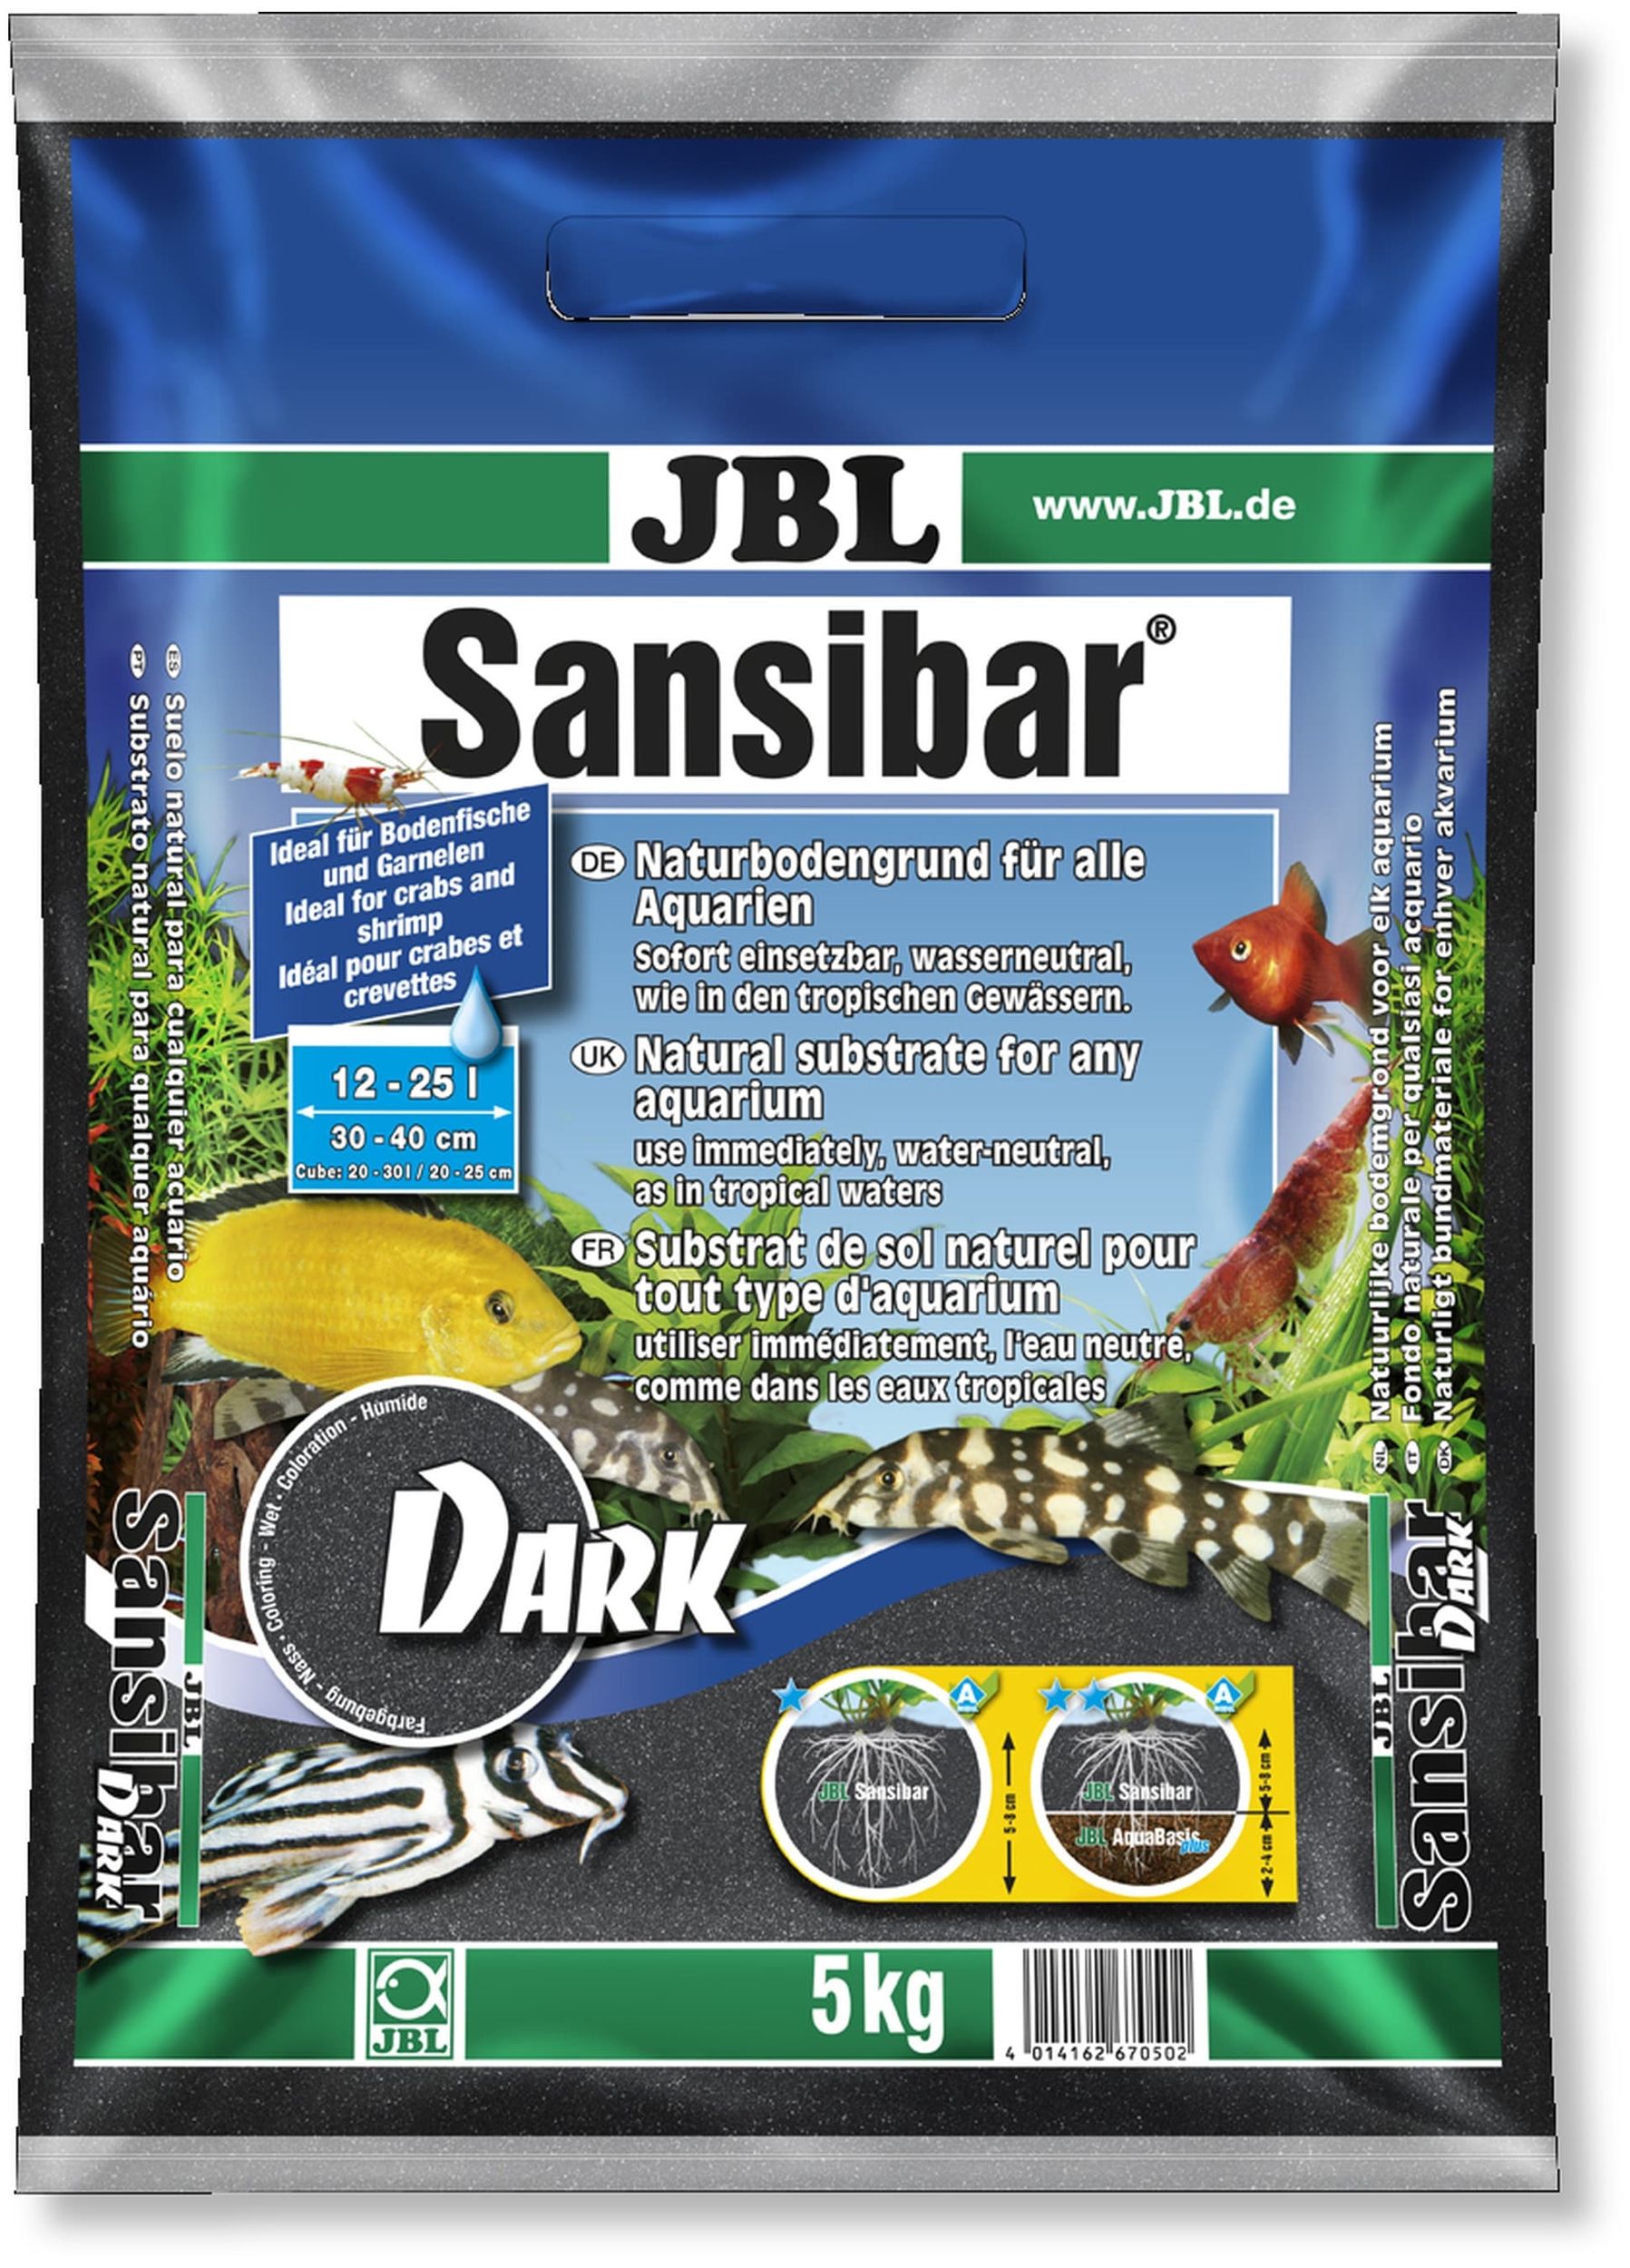 jbl-sansibar-dark-5-kg-substrat-de-sol-naturel-fin-couleur-noir-0-2-a-0-6-mm-pour-aquarium-d-eau-douce-min